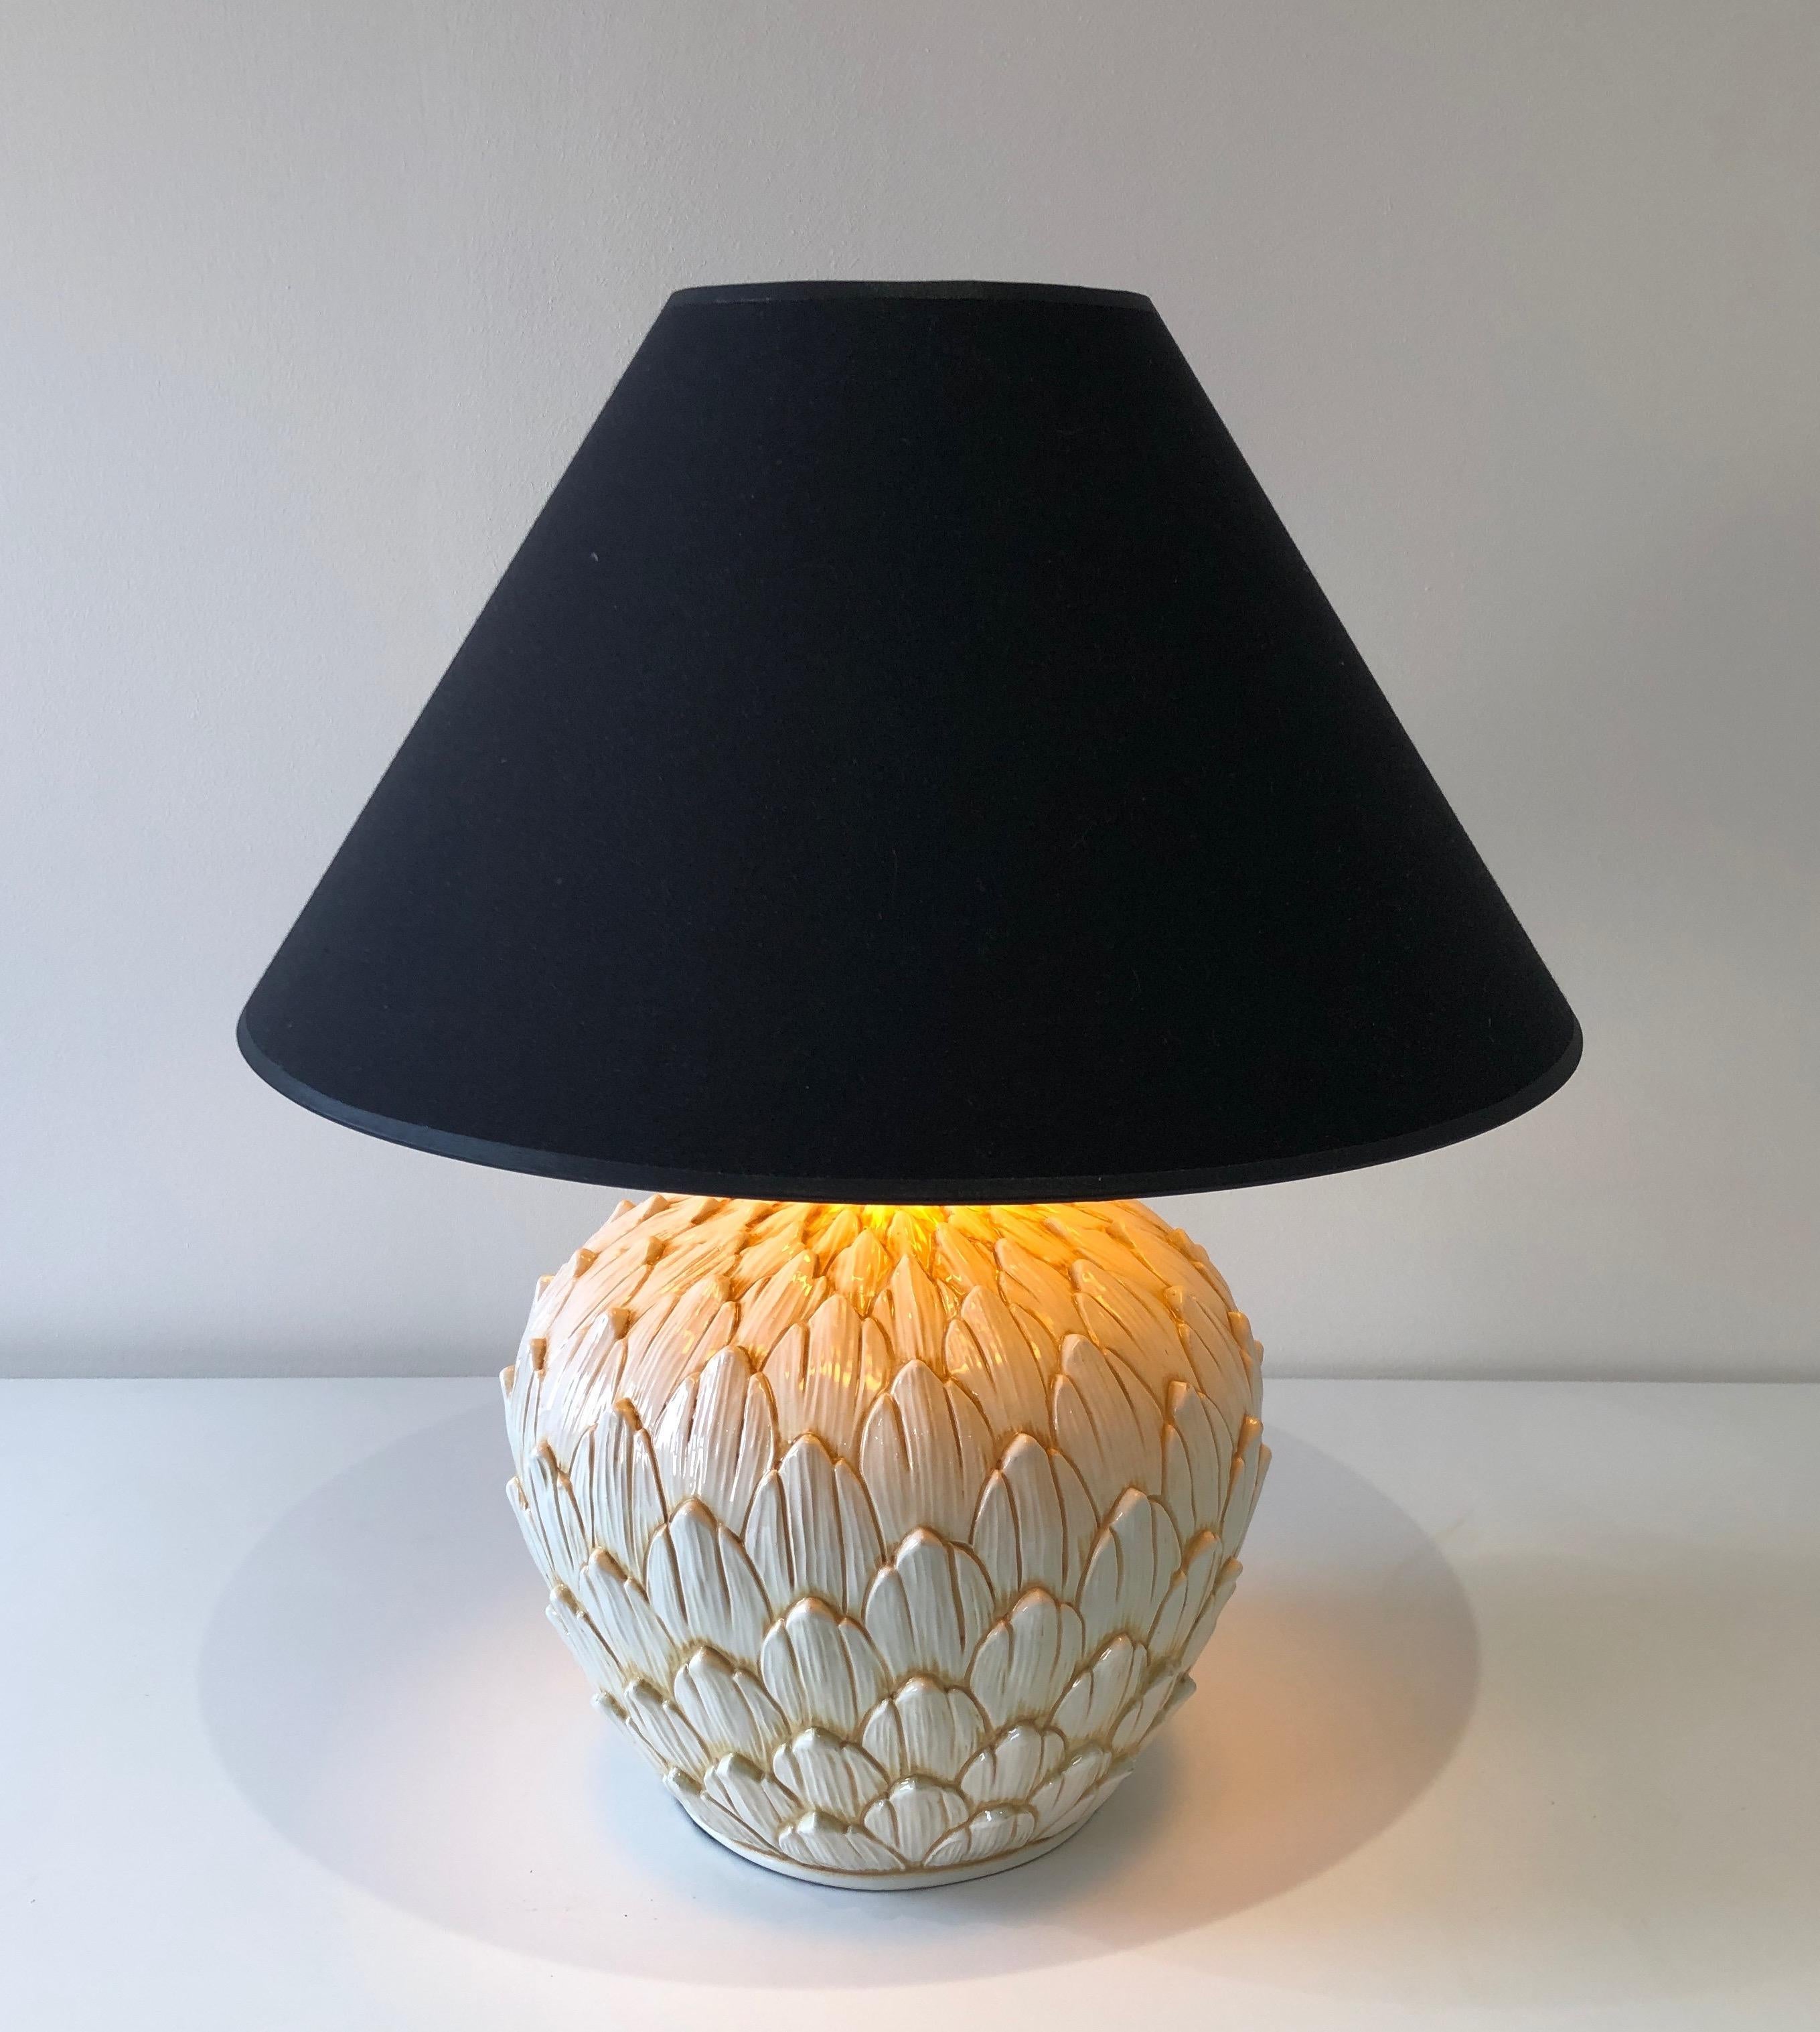 artichoke table lamp